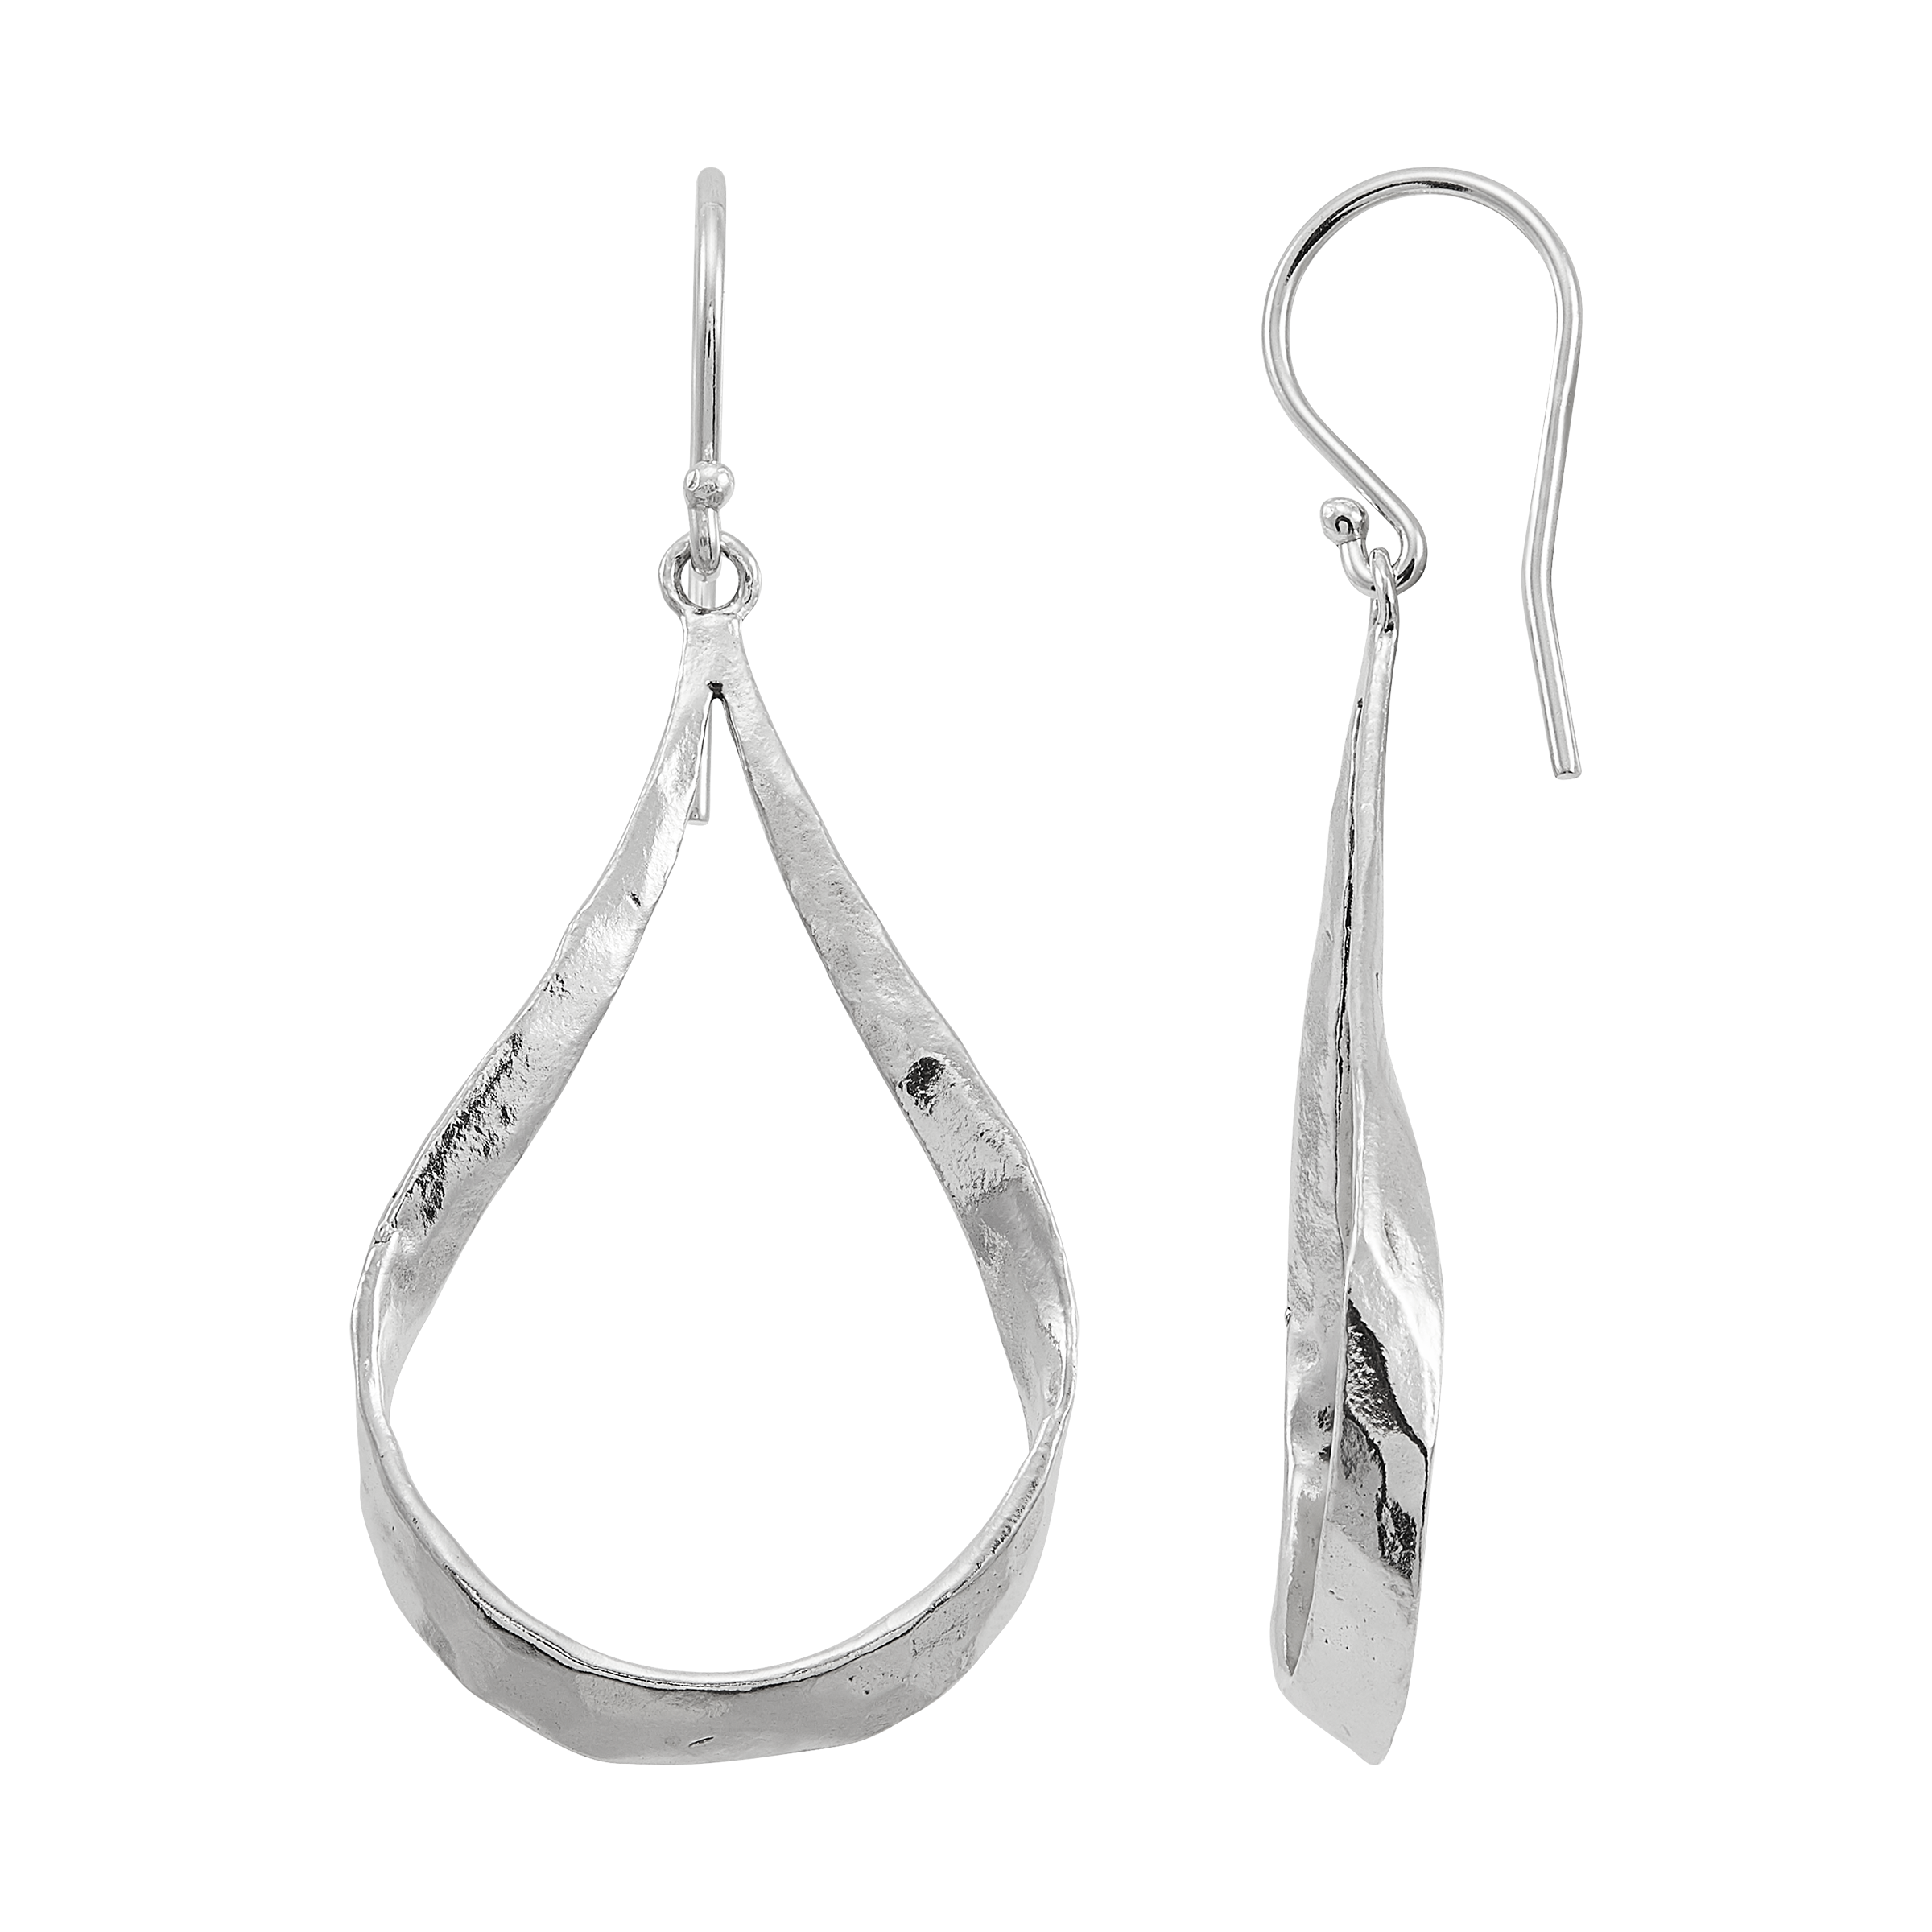 Silpada 'Hammered Ribbon' Drop Earrings in Sterling Silver | Silpada